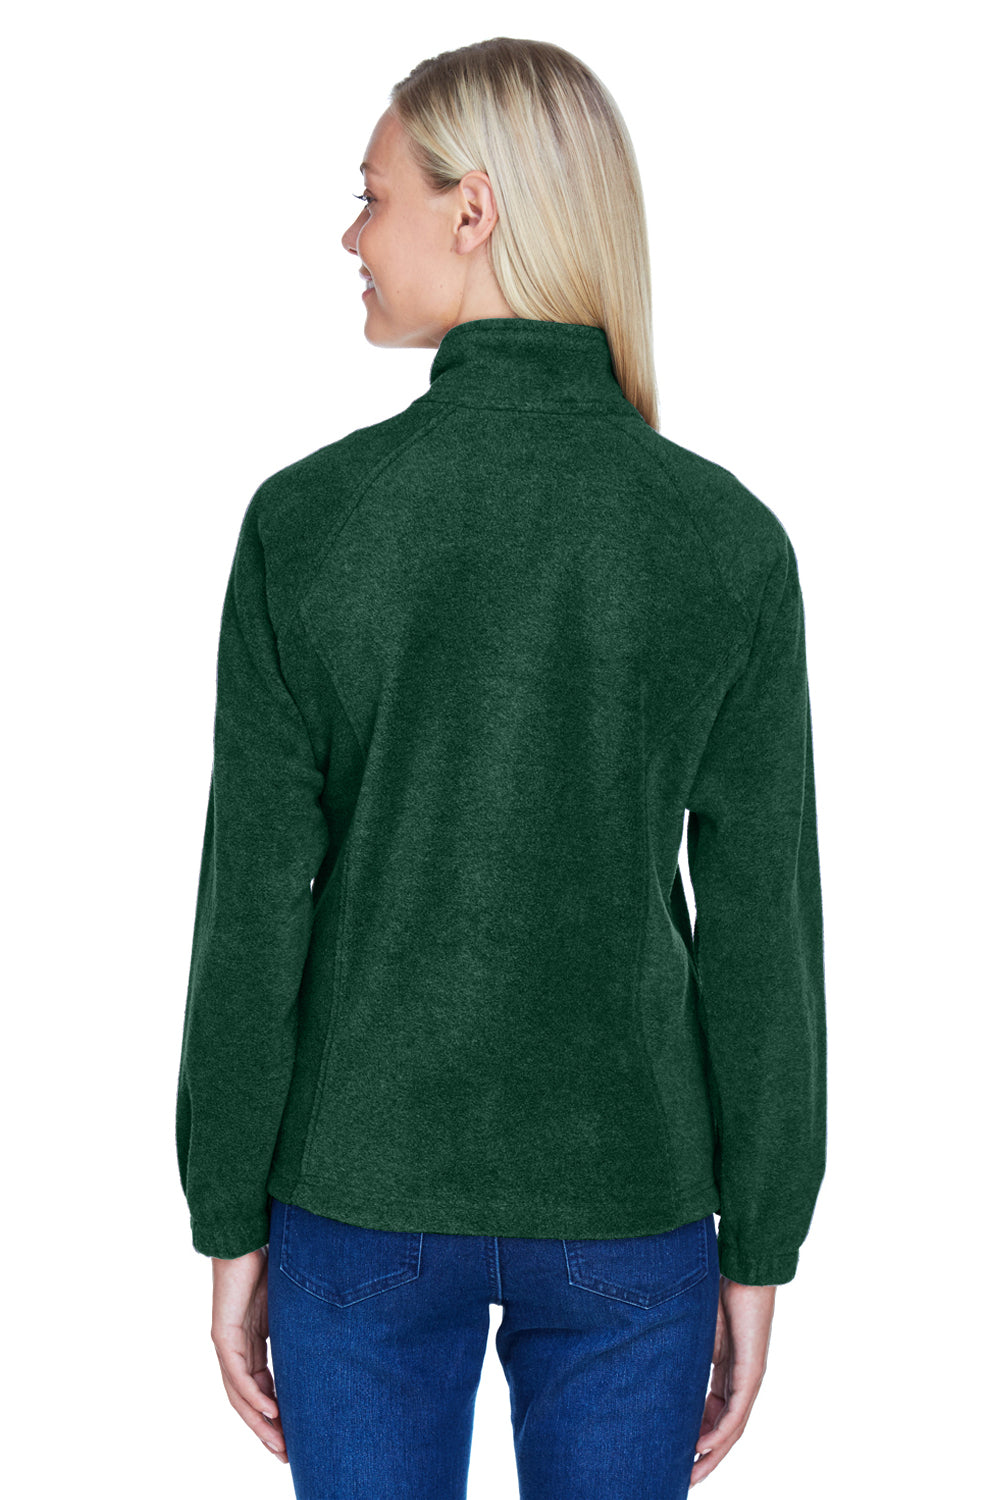 Harriton M990W Womens Full Zip Fleece Jacket Hunter Green Back